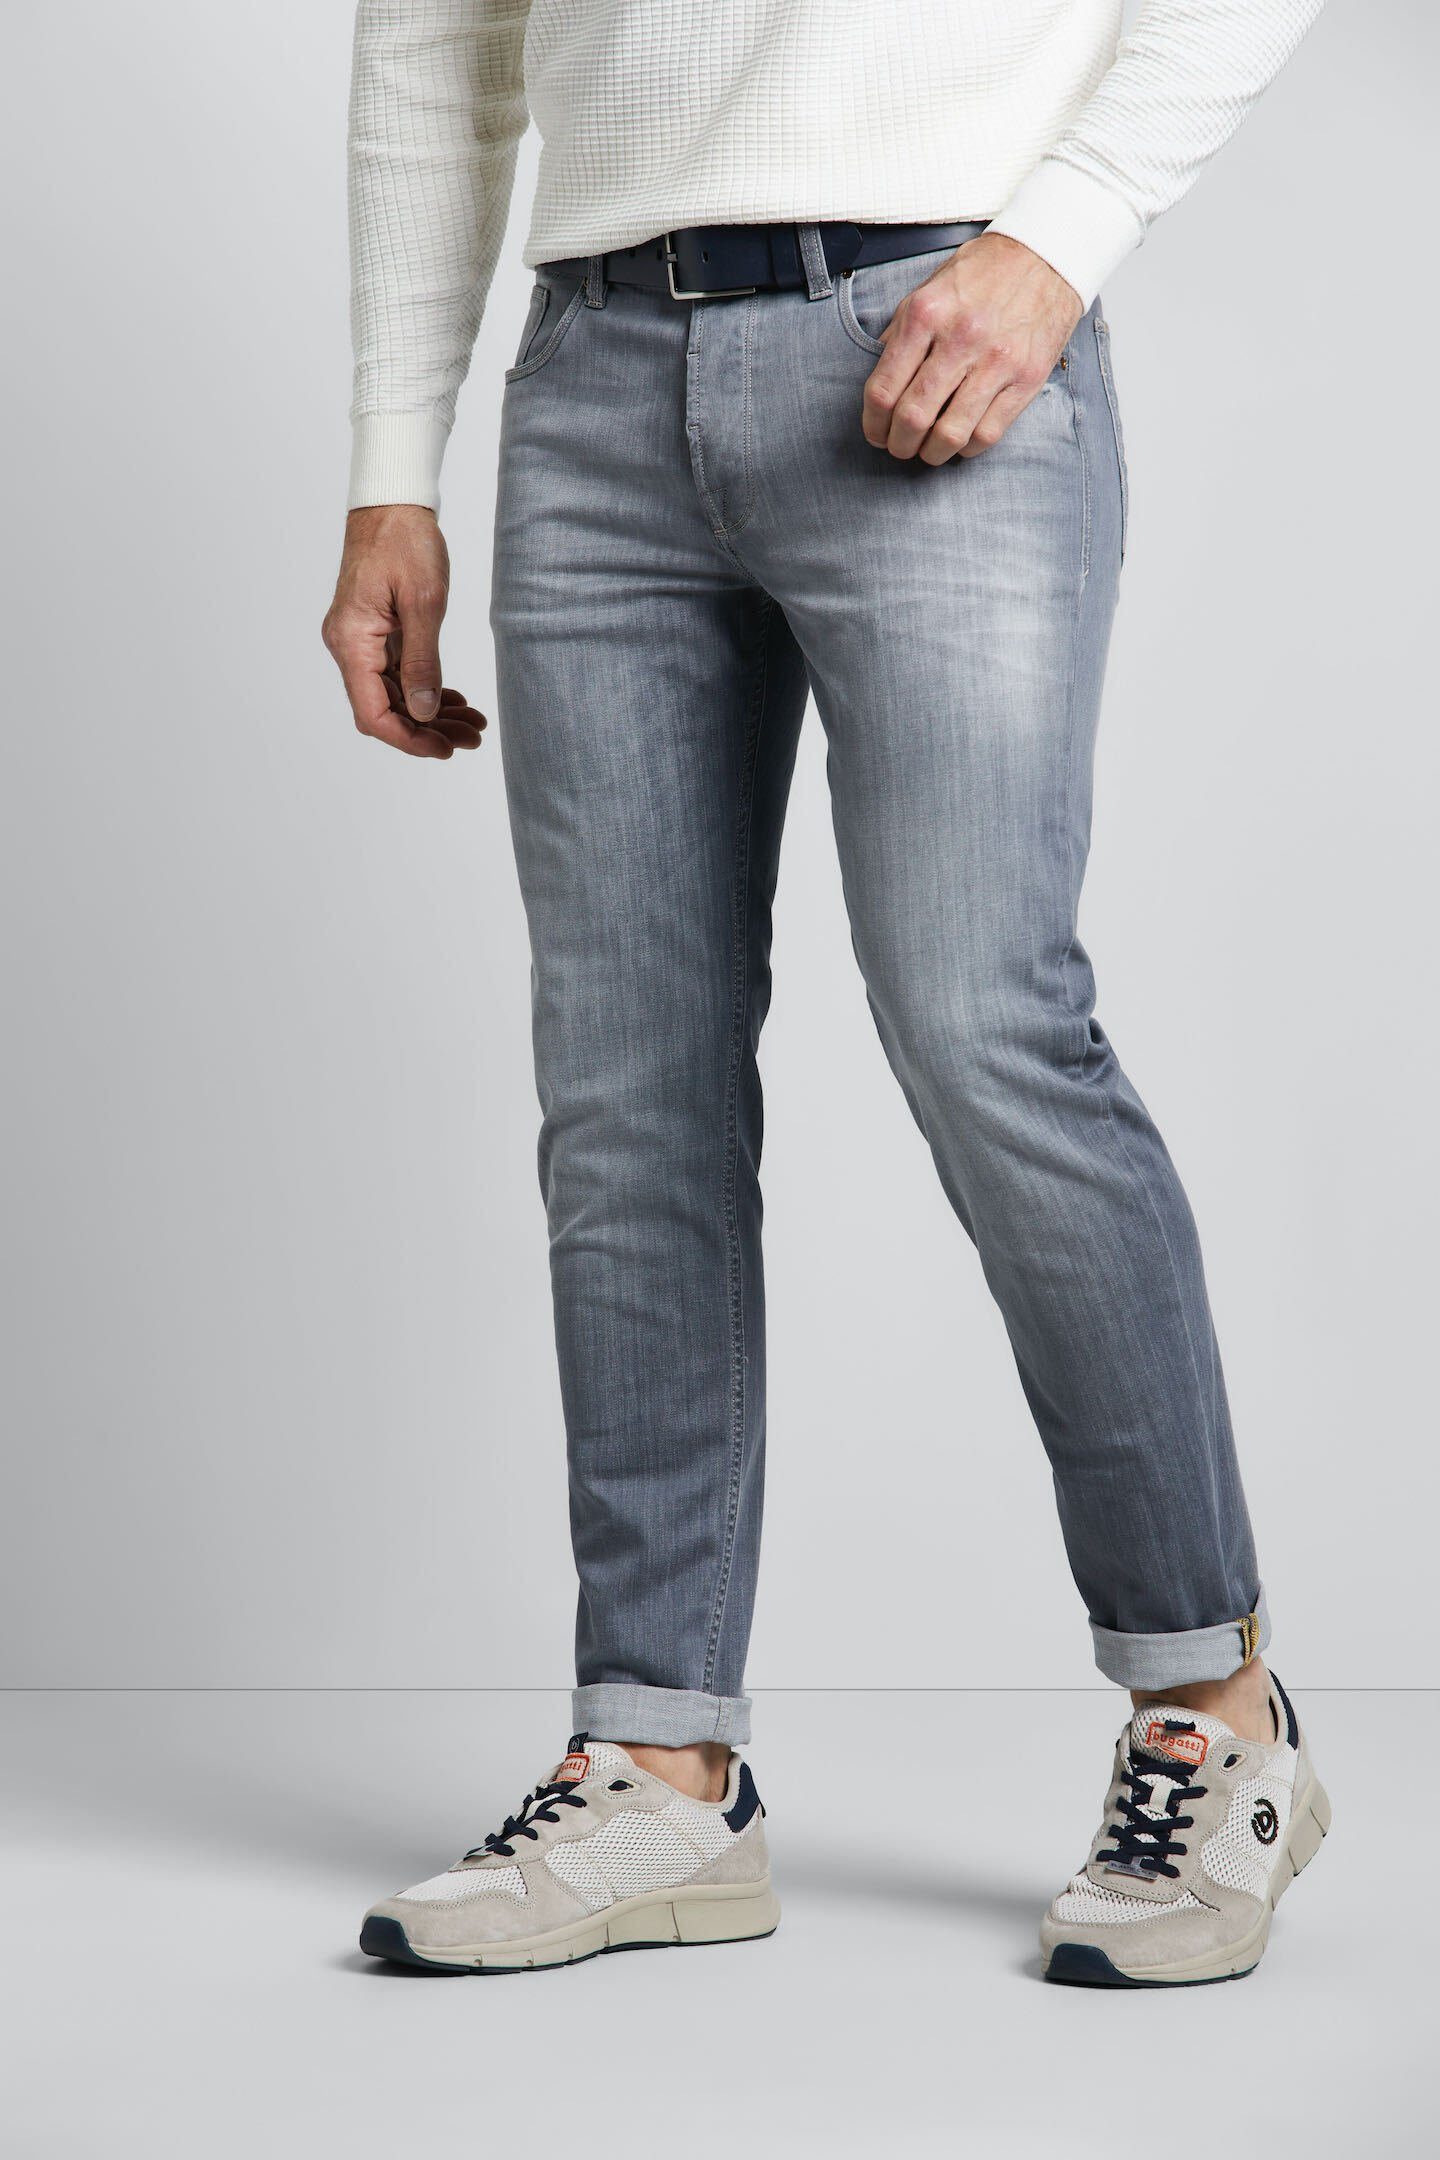 Offizieller Versandhandel der Marke bugatti 5-Pocket-Jeans grau Used-Waschung mit